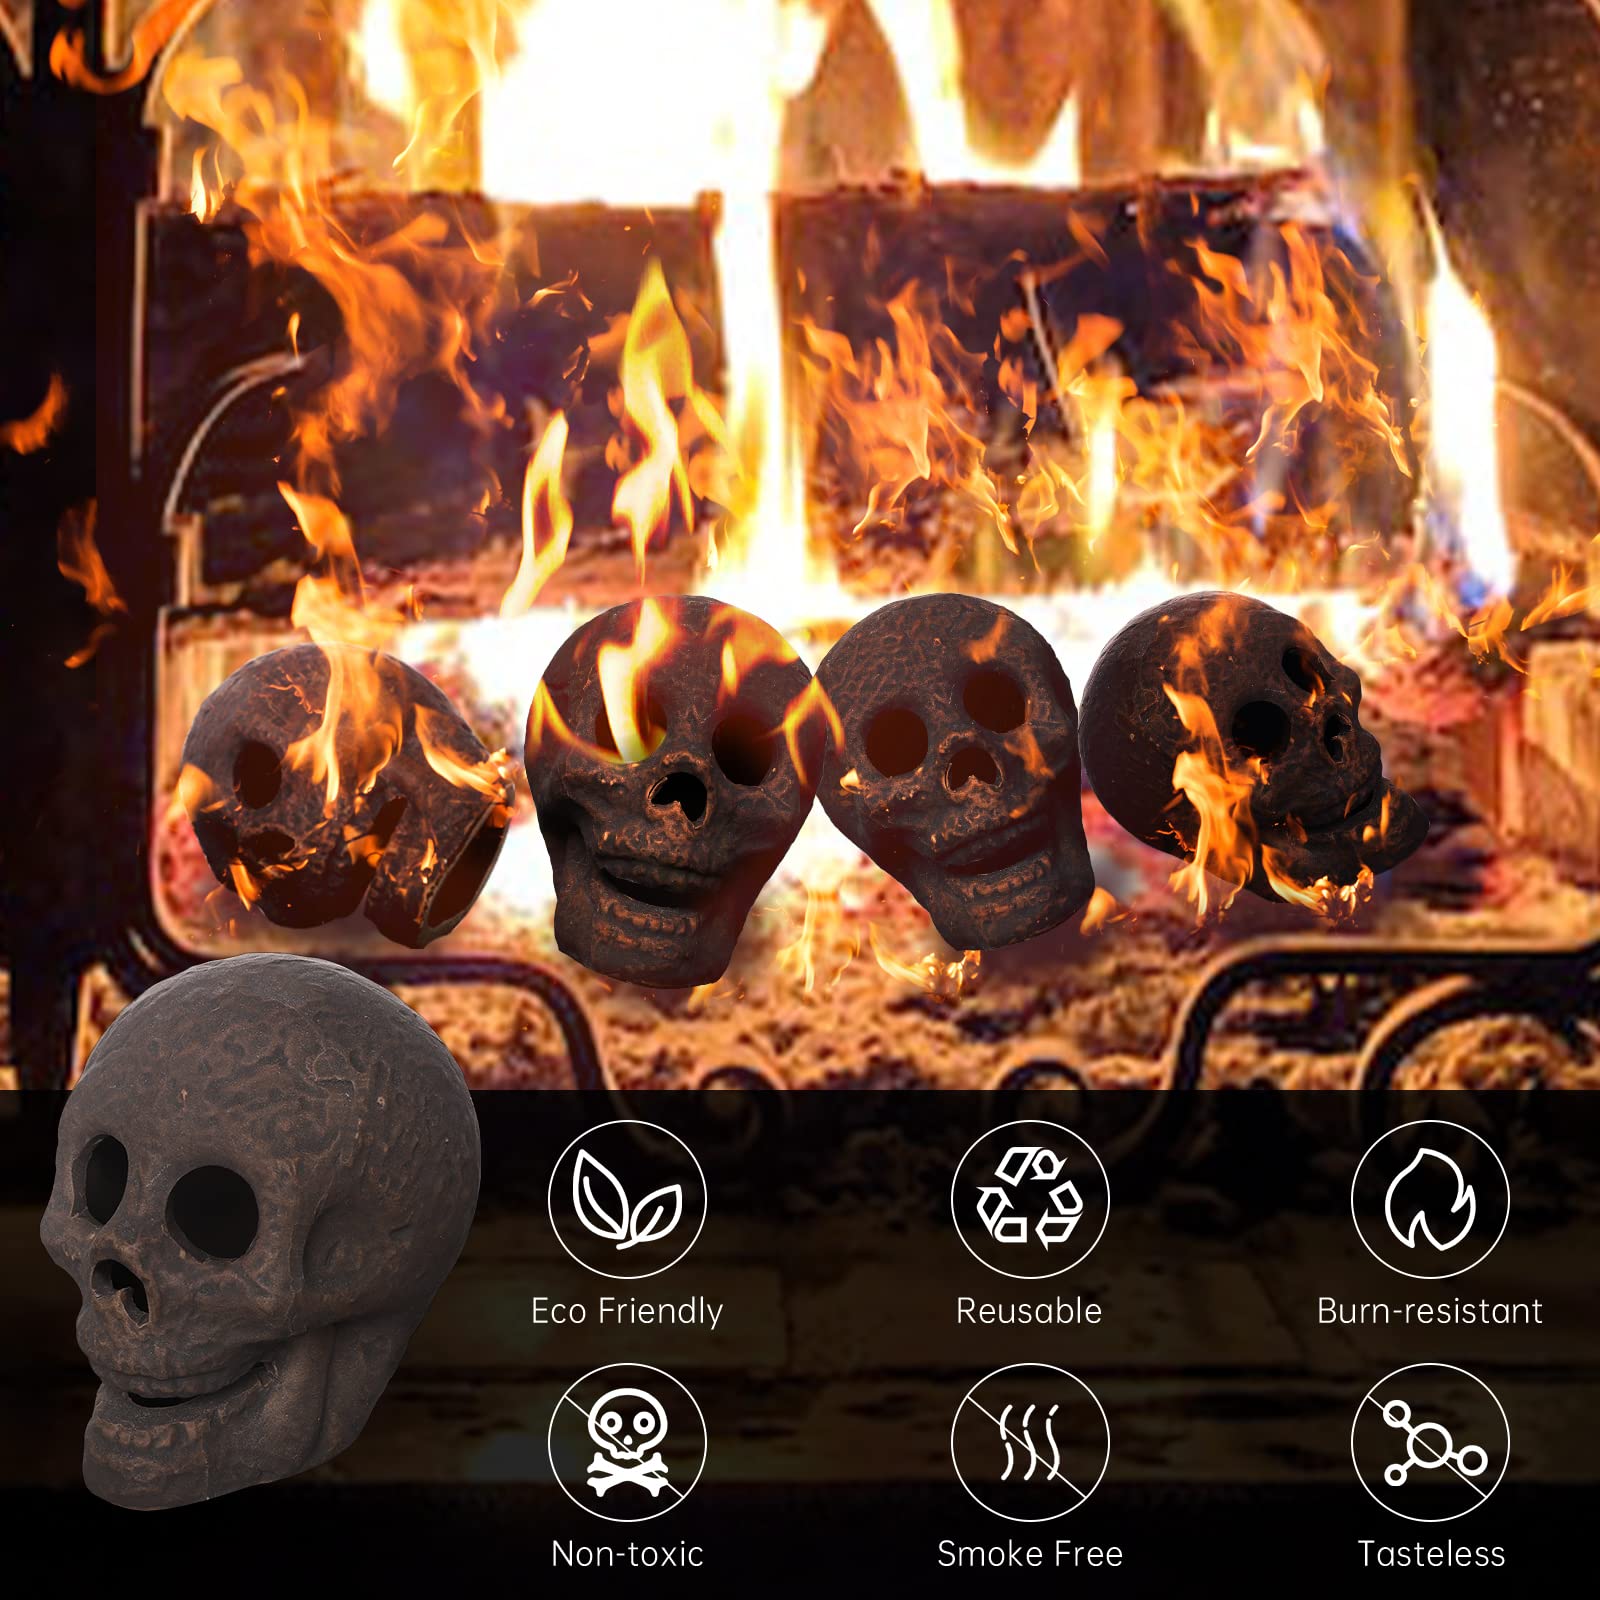 LAZY TIGER Halloween Fire Pit Skull Ceramic Props,Reusable Fireproof Skull Fire Pit, Halloween Decor for Fire Pit ,Fireplace, Gas, Halloween Horror Skull Decorations (1PCS)